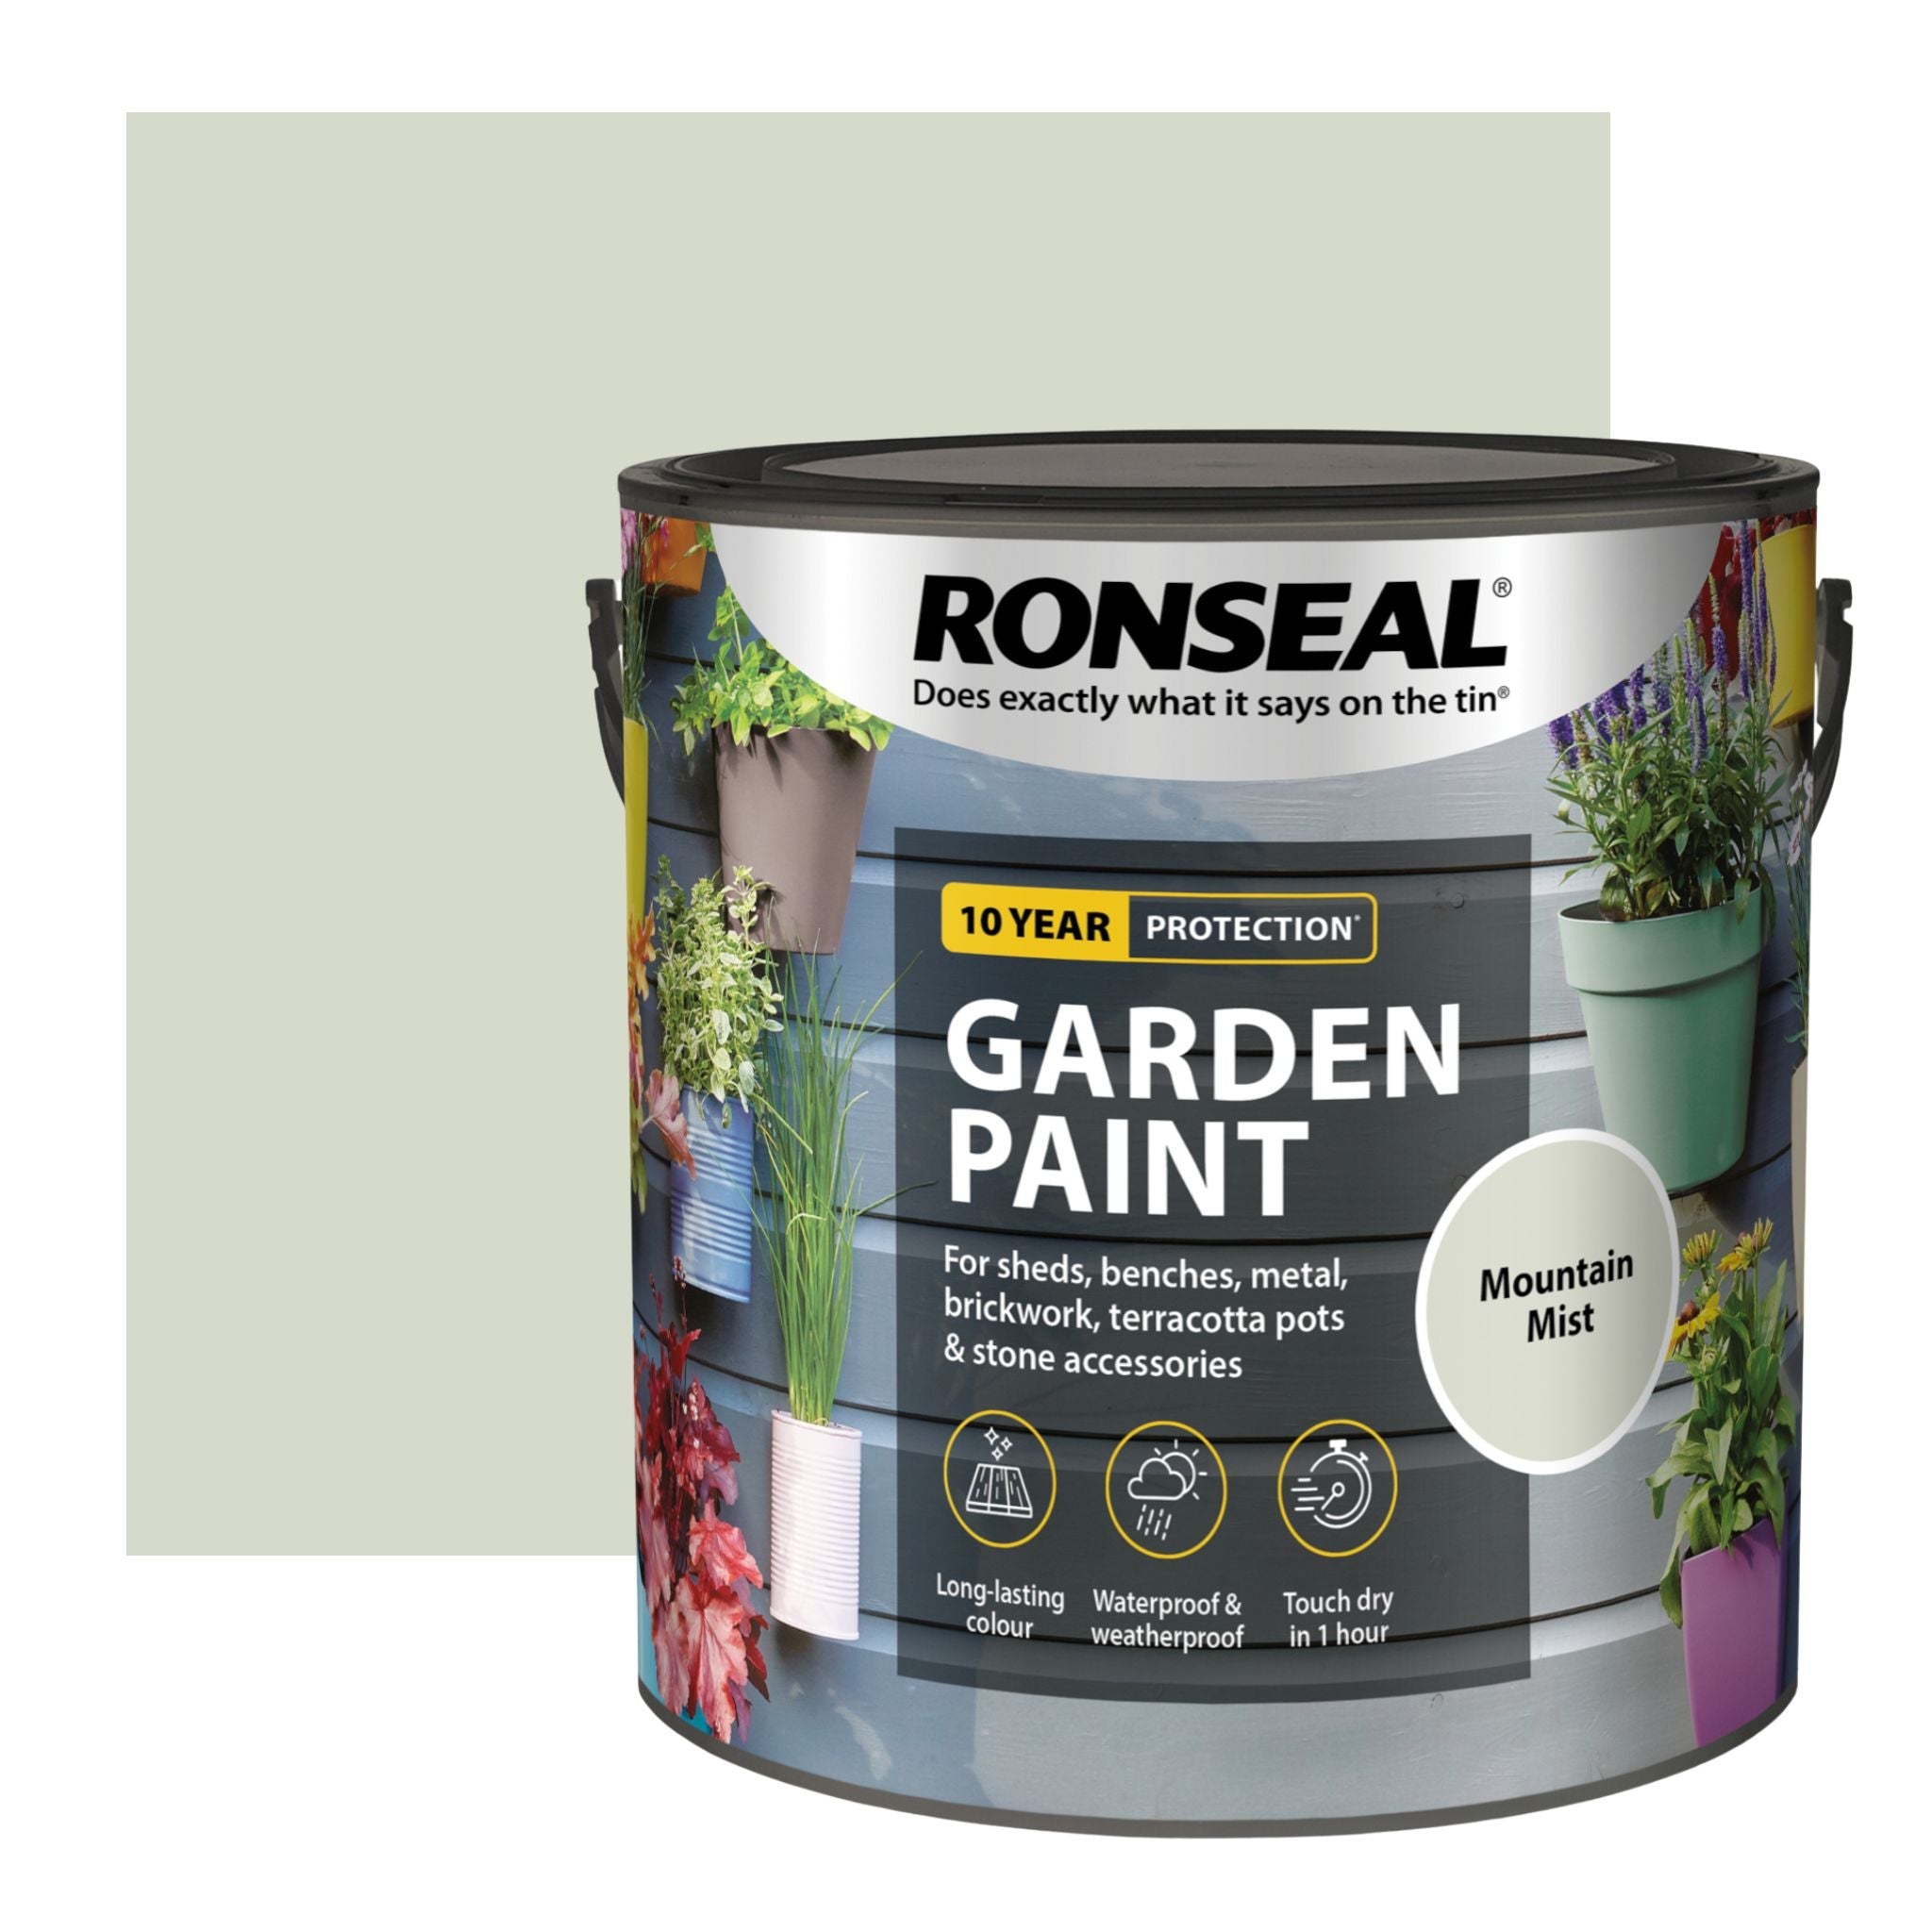 Ronseal Garden Paint - Restorate-5010214894413